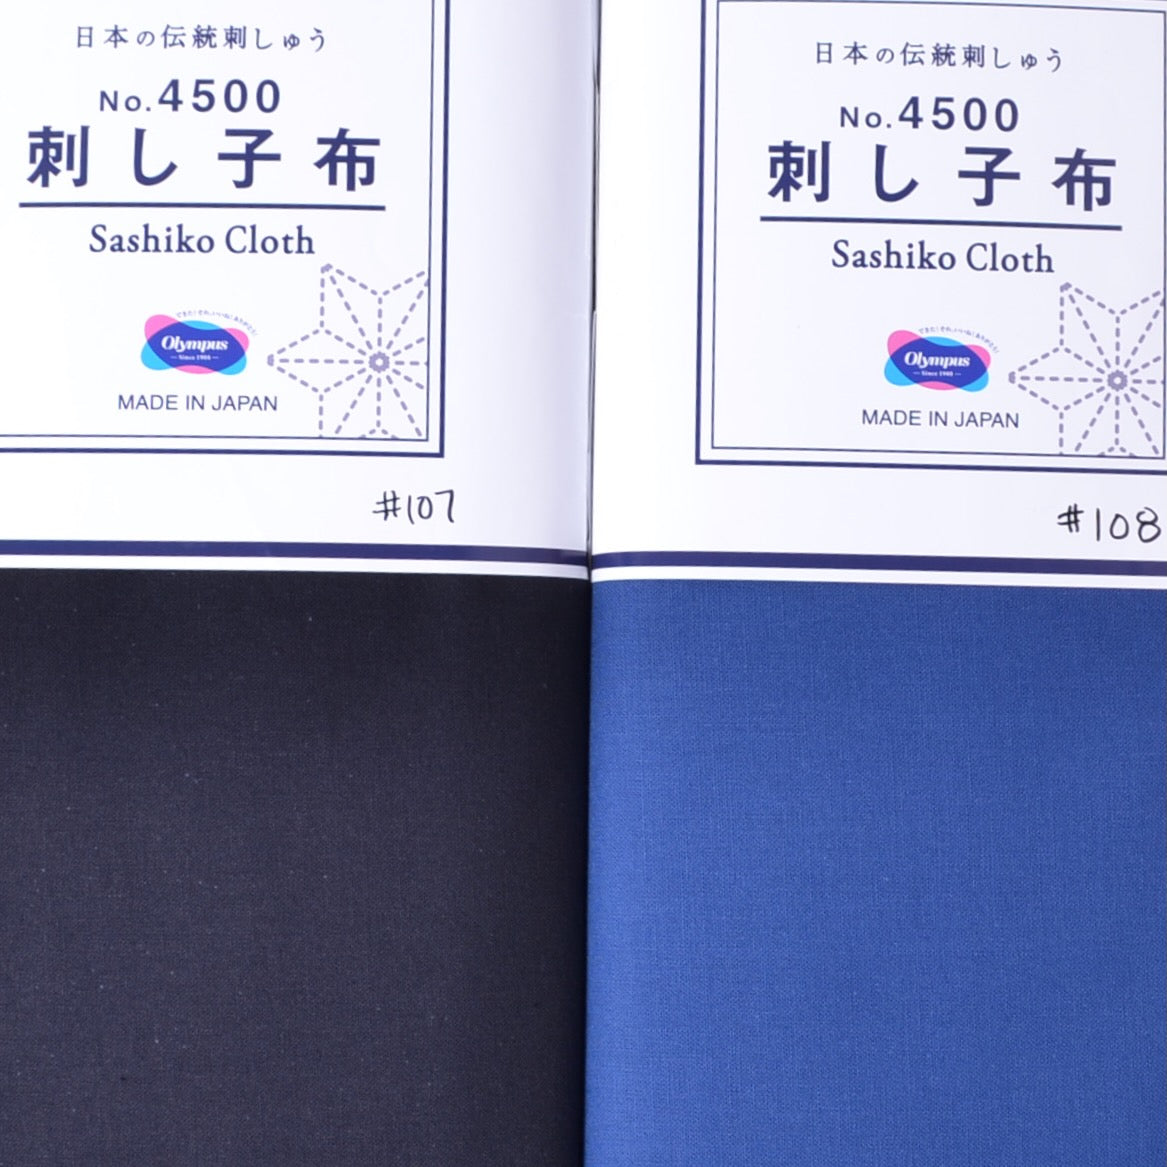 Sashiko Cloth 4500